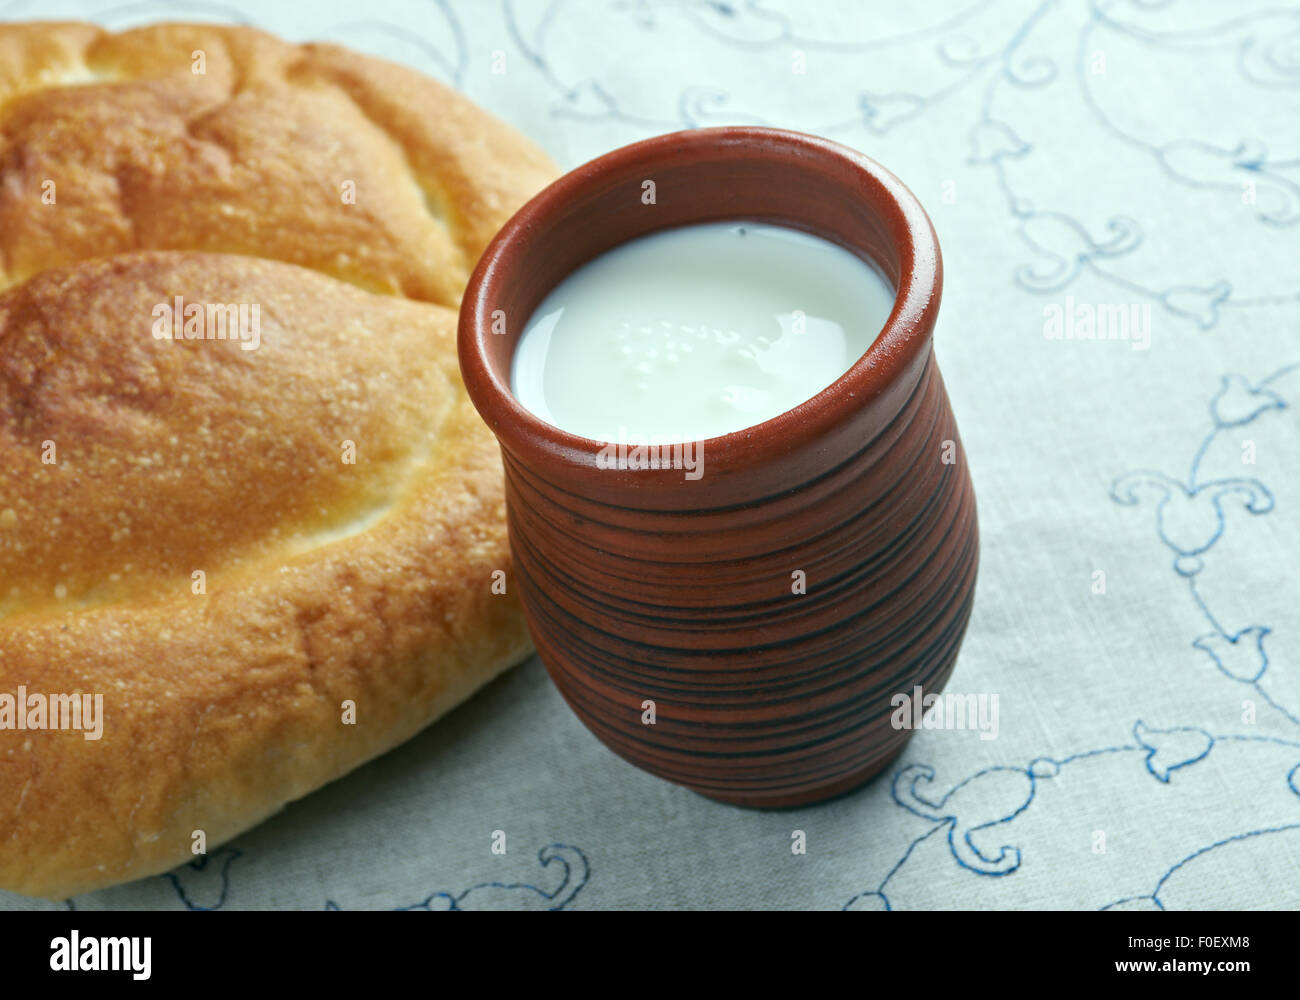 Kaymak sahnige Milchprodukt ähnlich wie geronnene cream.in Zentralasien, dem Balkan, türkischen Regionen Stockfoto